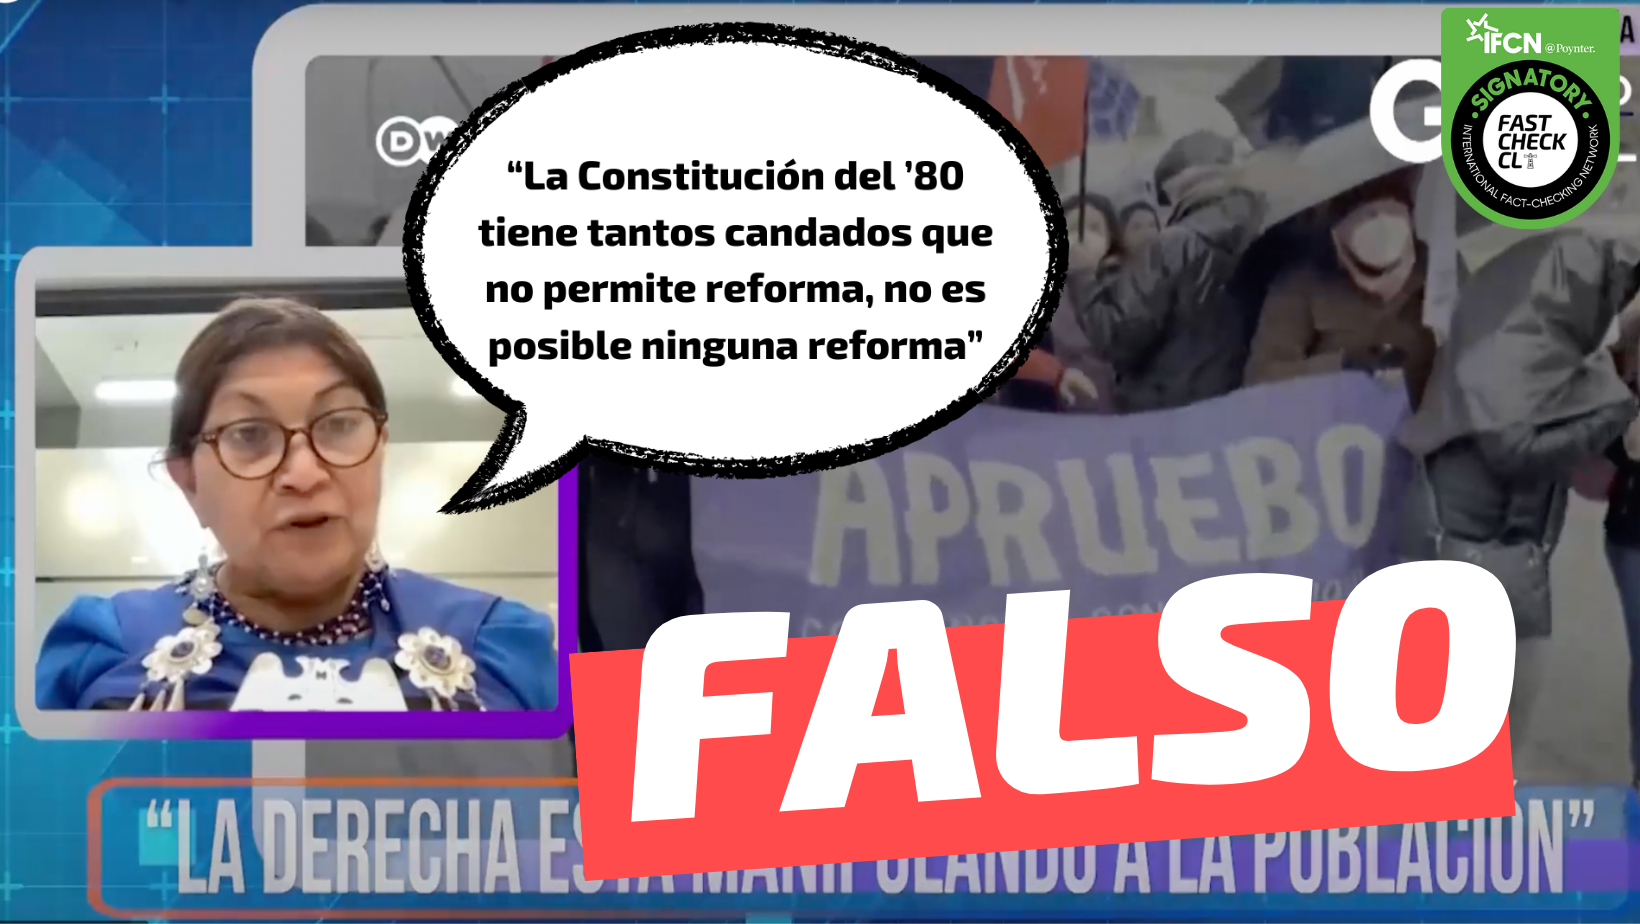 You are currently viewing “La Constitución del ’80 tiene tantos candados que no permite reforma, no es posible ninguna reforma”: #Falso